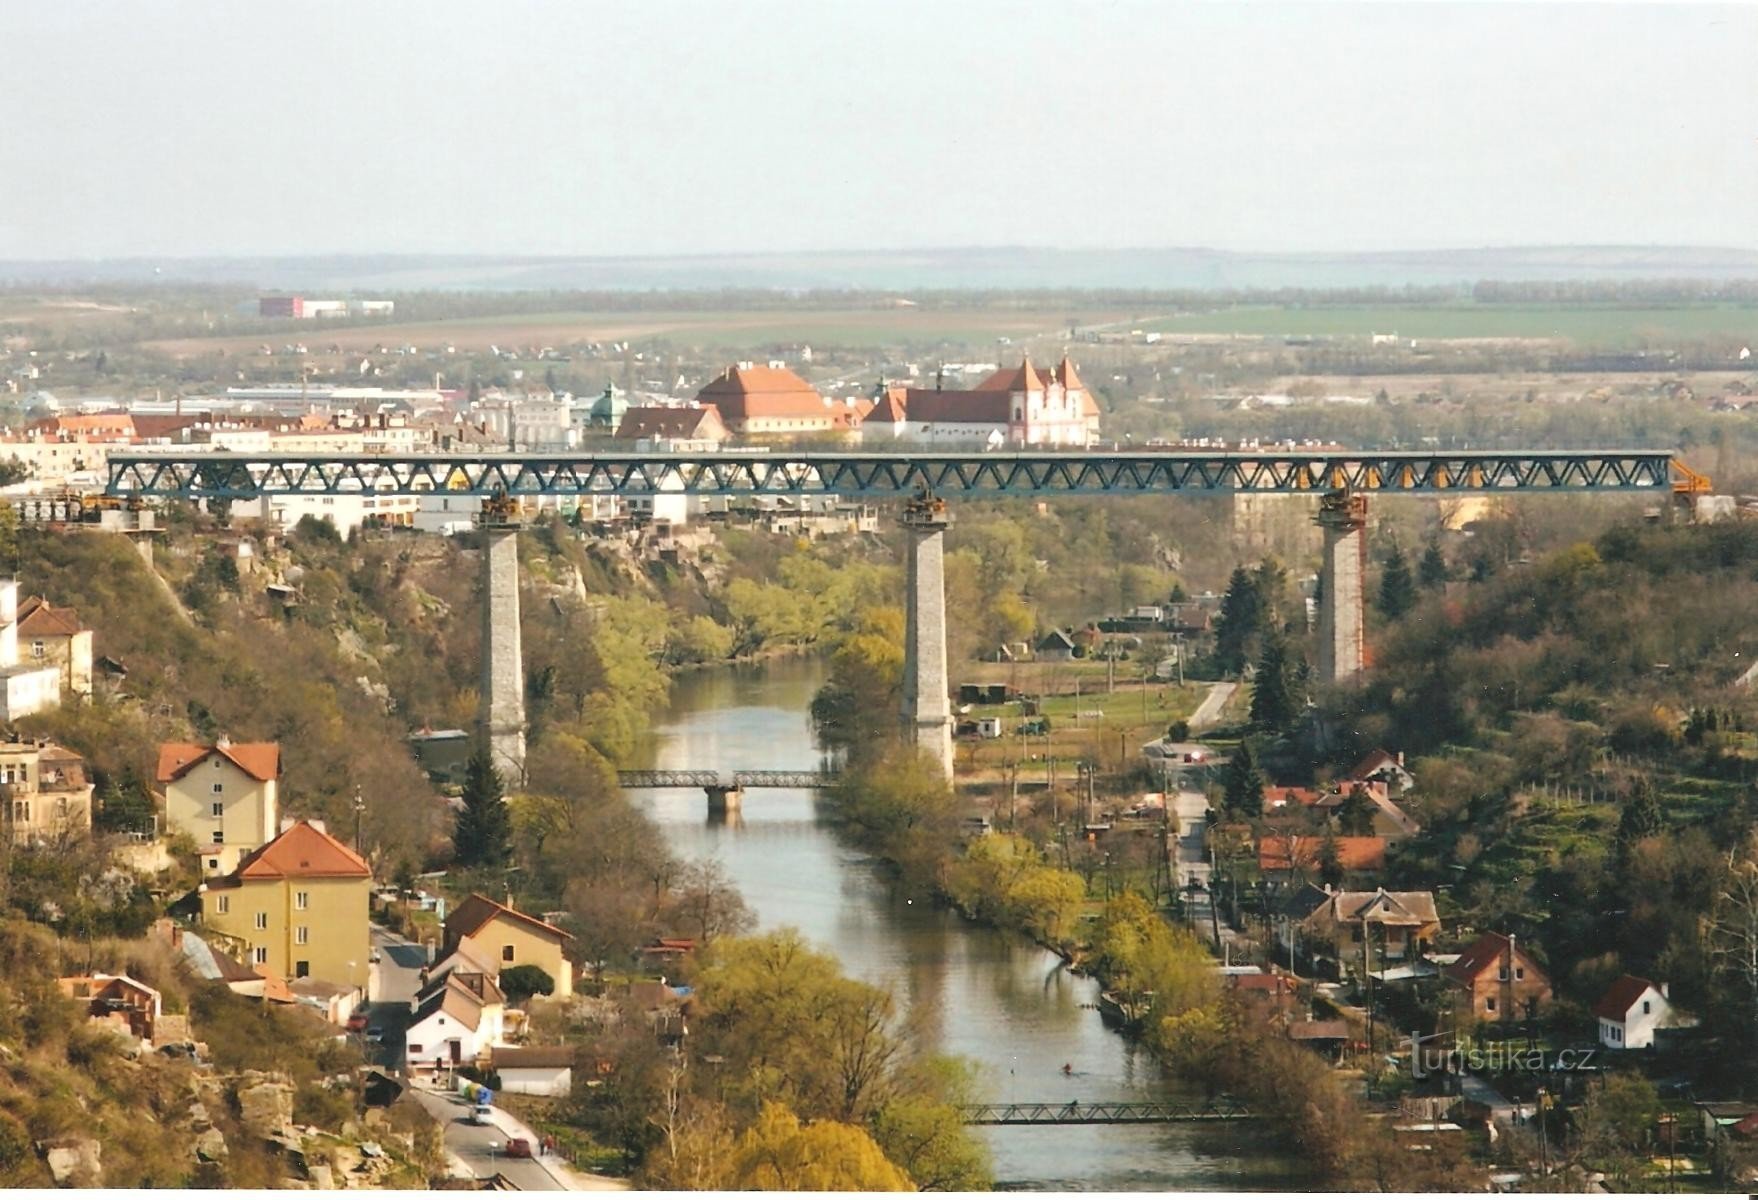 Rautatien silta kunnostettu vuonna 2009